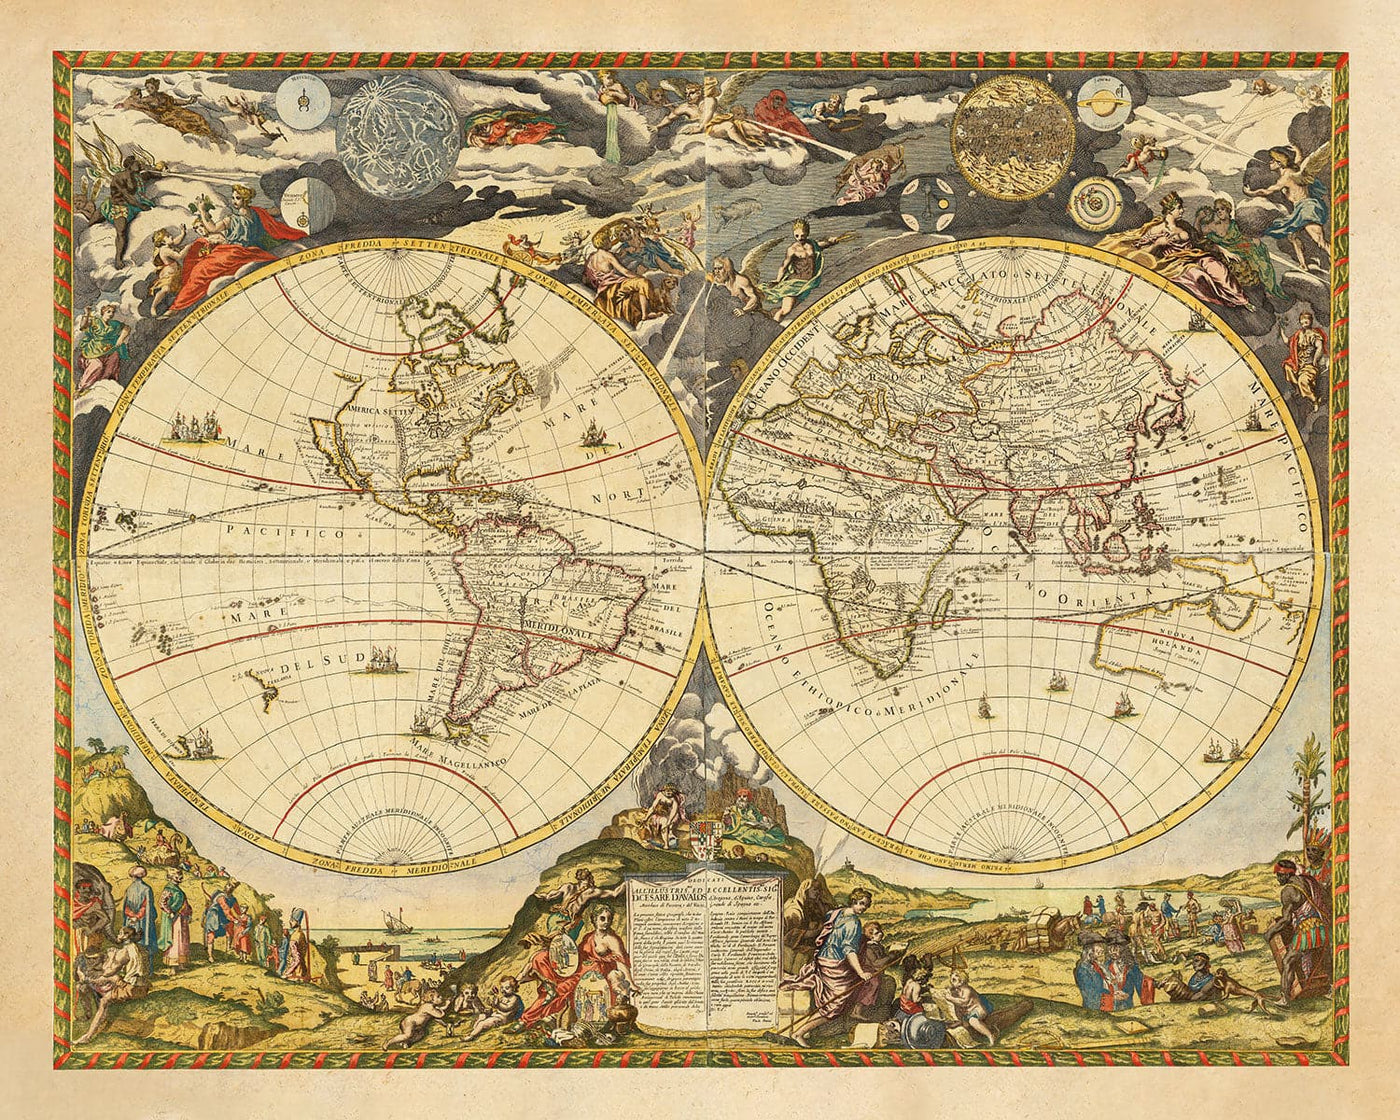 Carte de l'Atlas d'Old World, 1700 par Paolo Petrini - Carte rare Maincolourrée Antique